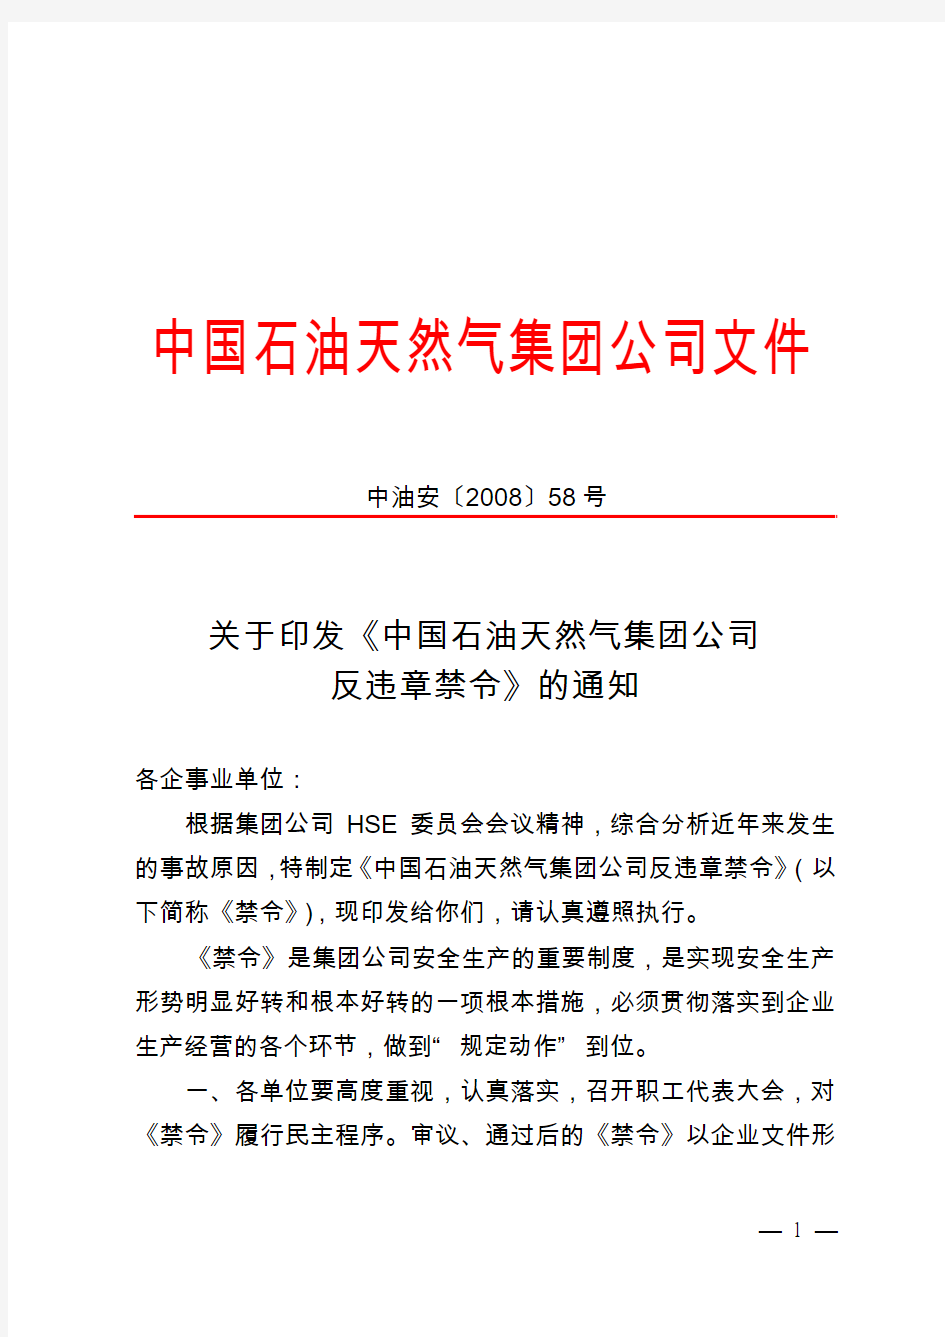 《中国石油天然气集团公司反违章禁令》通知